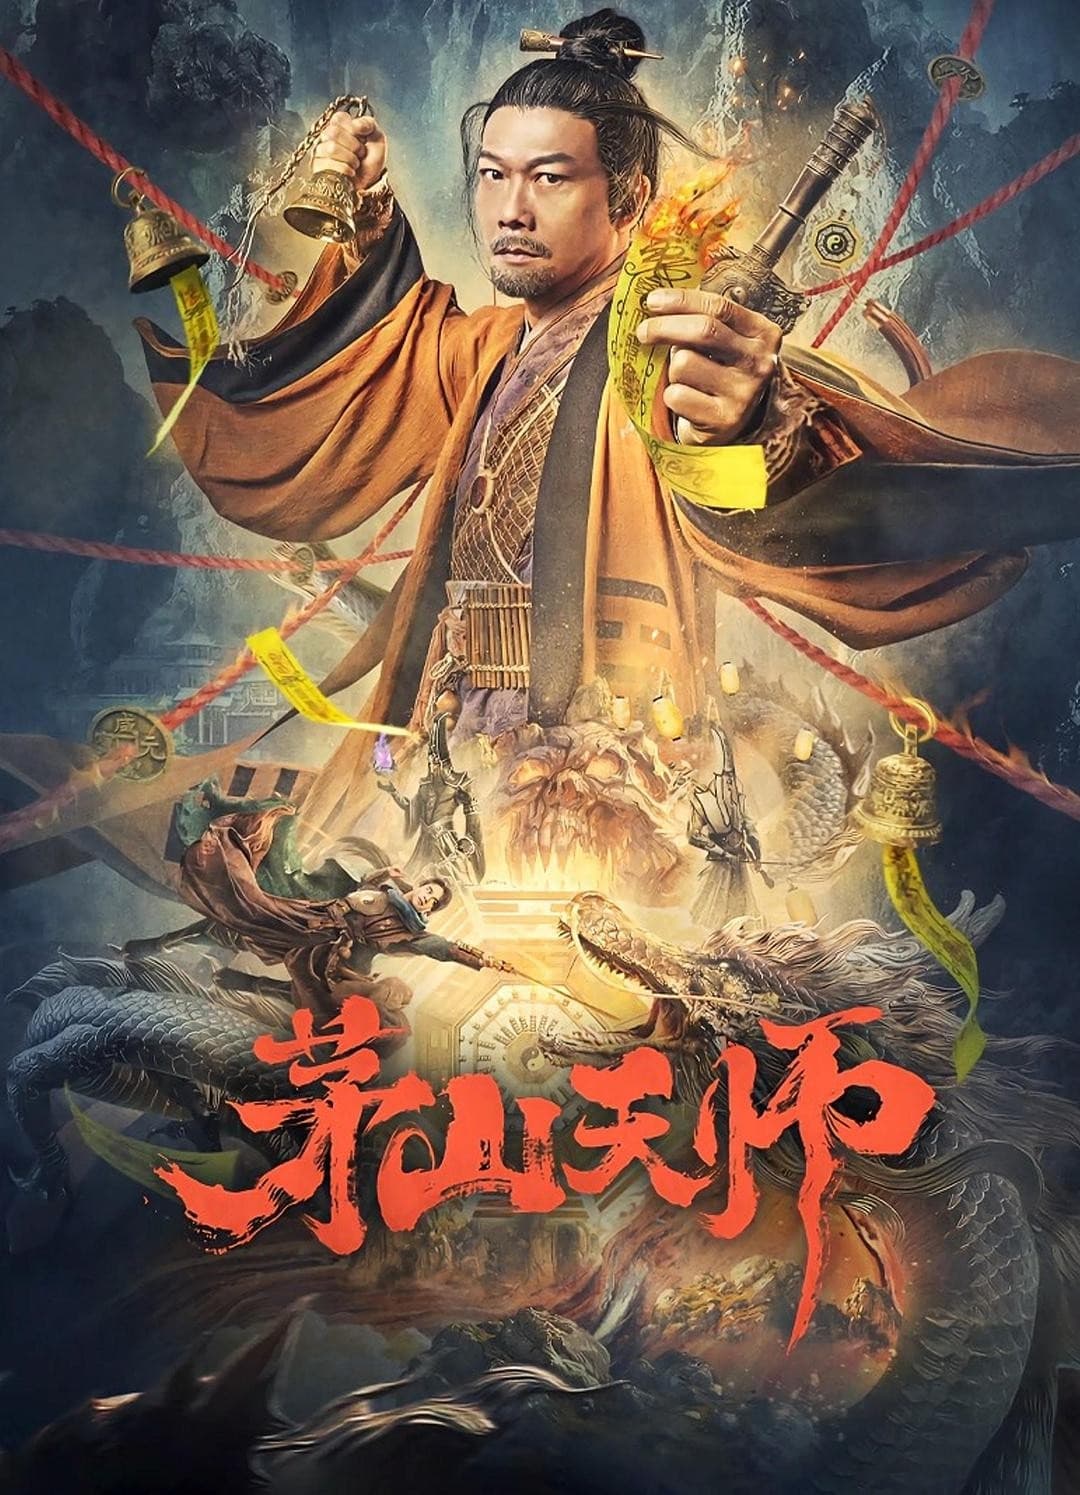 Mao Sơn Thiên Sư - Maoshan Heavenly Master (2022)